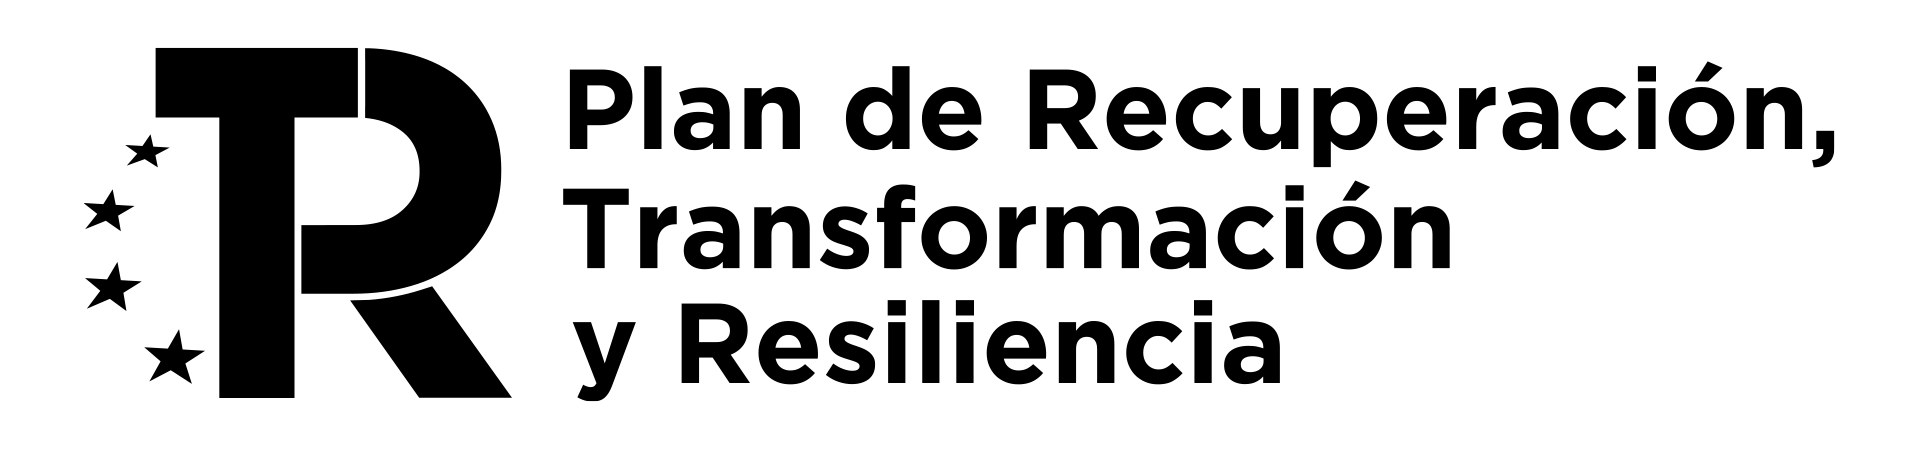 PRTR Logo